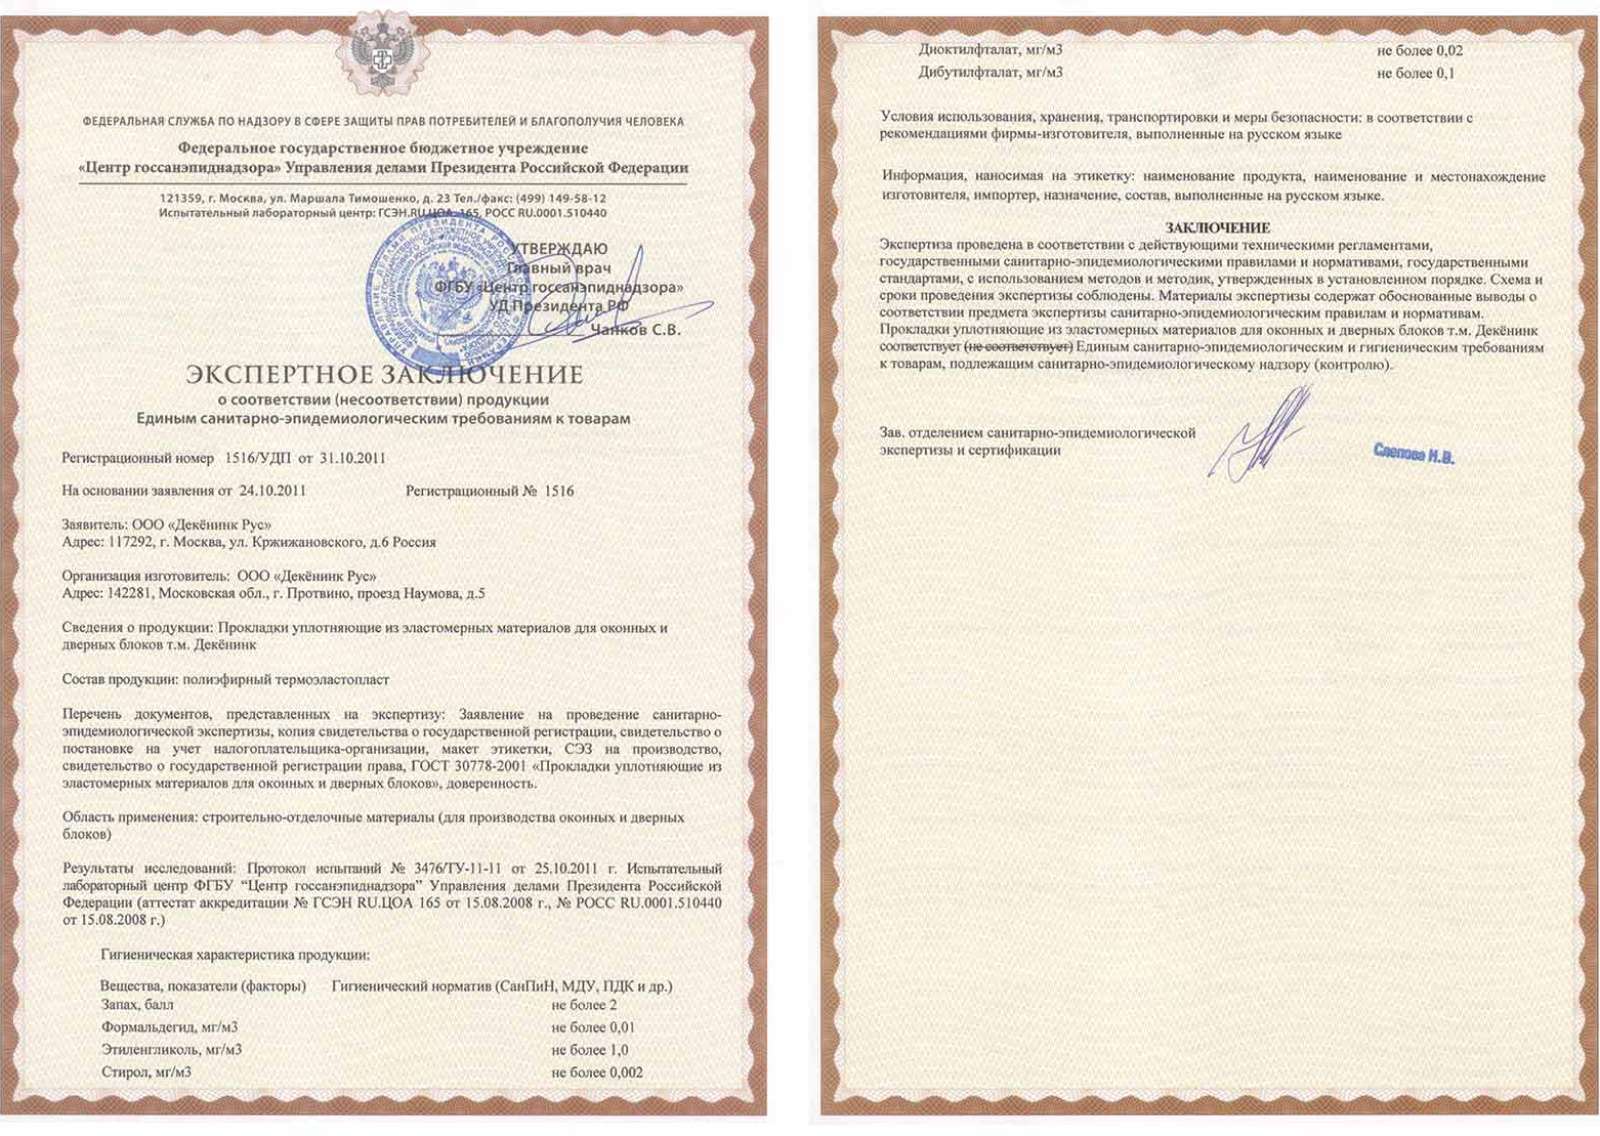 Сертификат соответствия санэпидем требованиям 1516/УДП от 31.10.11